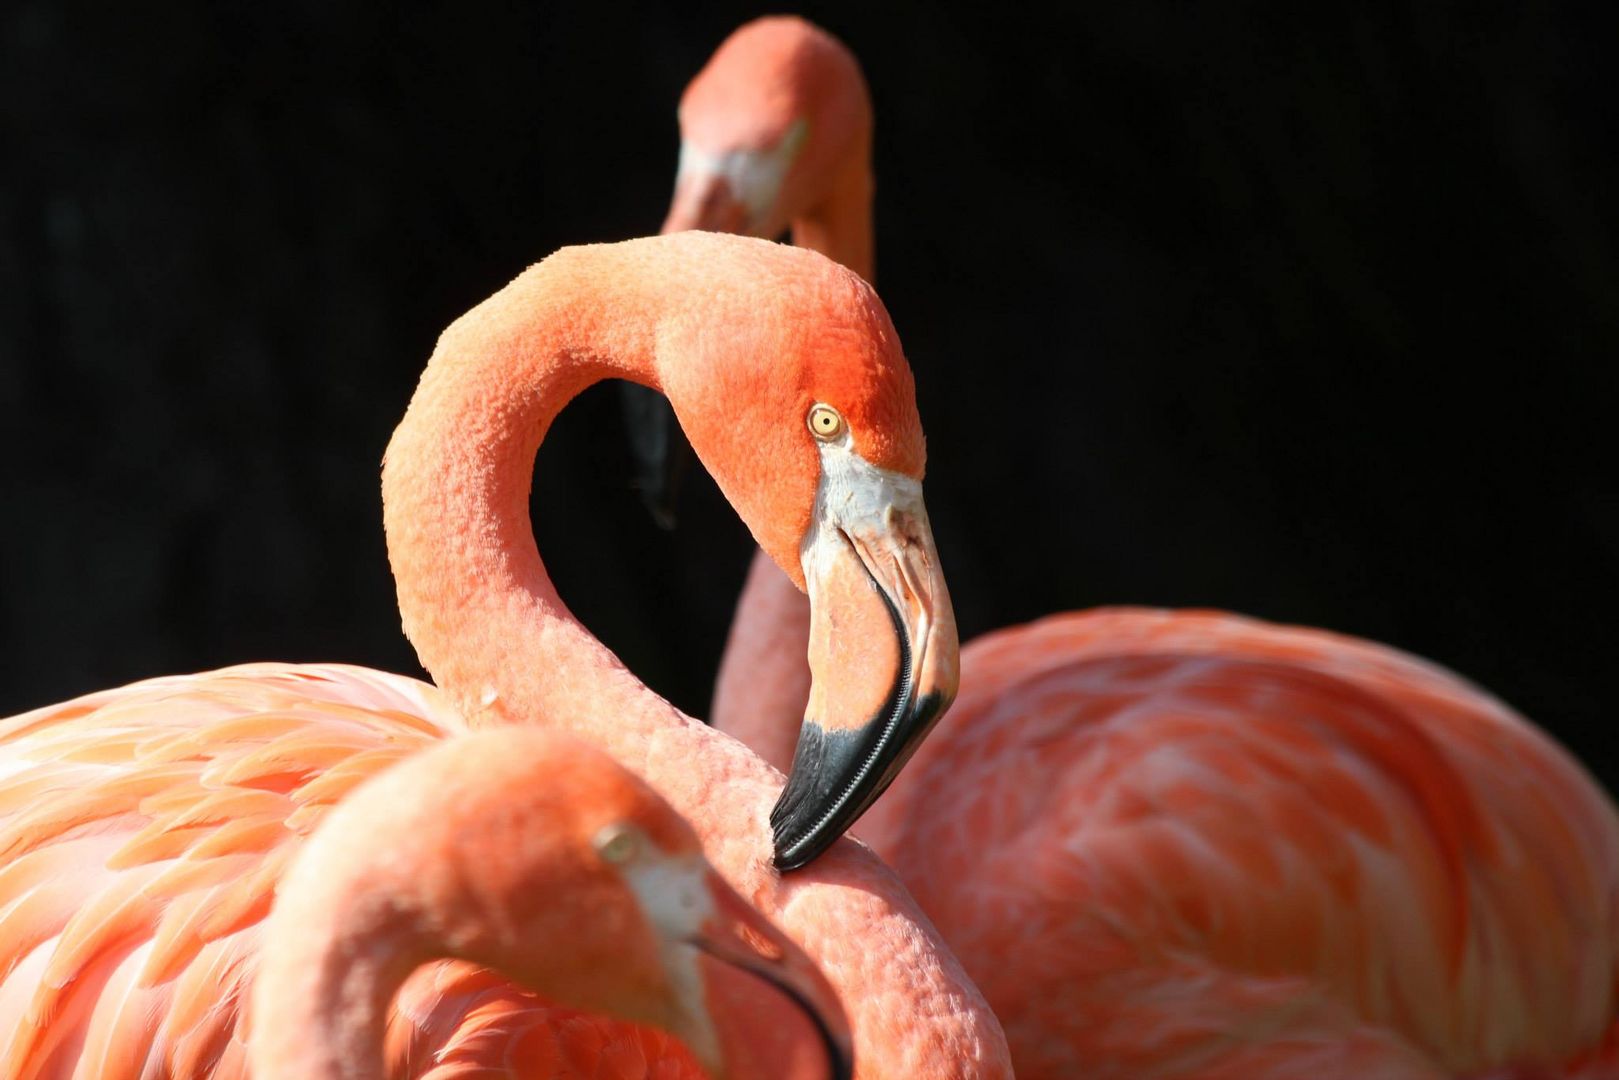 ... Oh my pretty flamingo ...